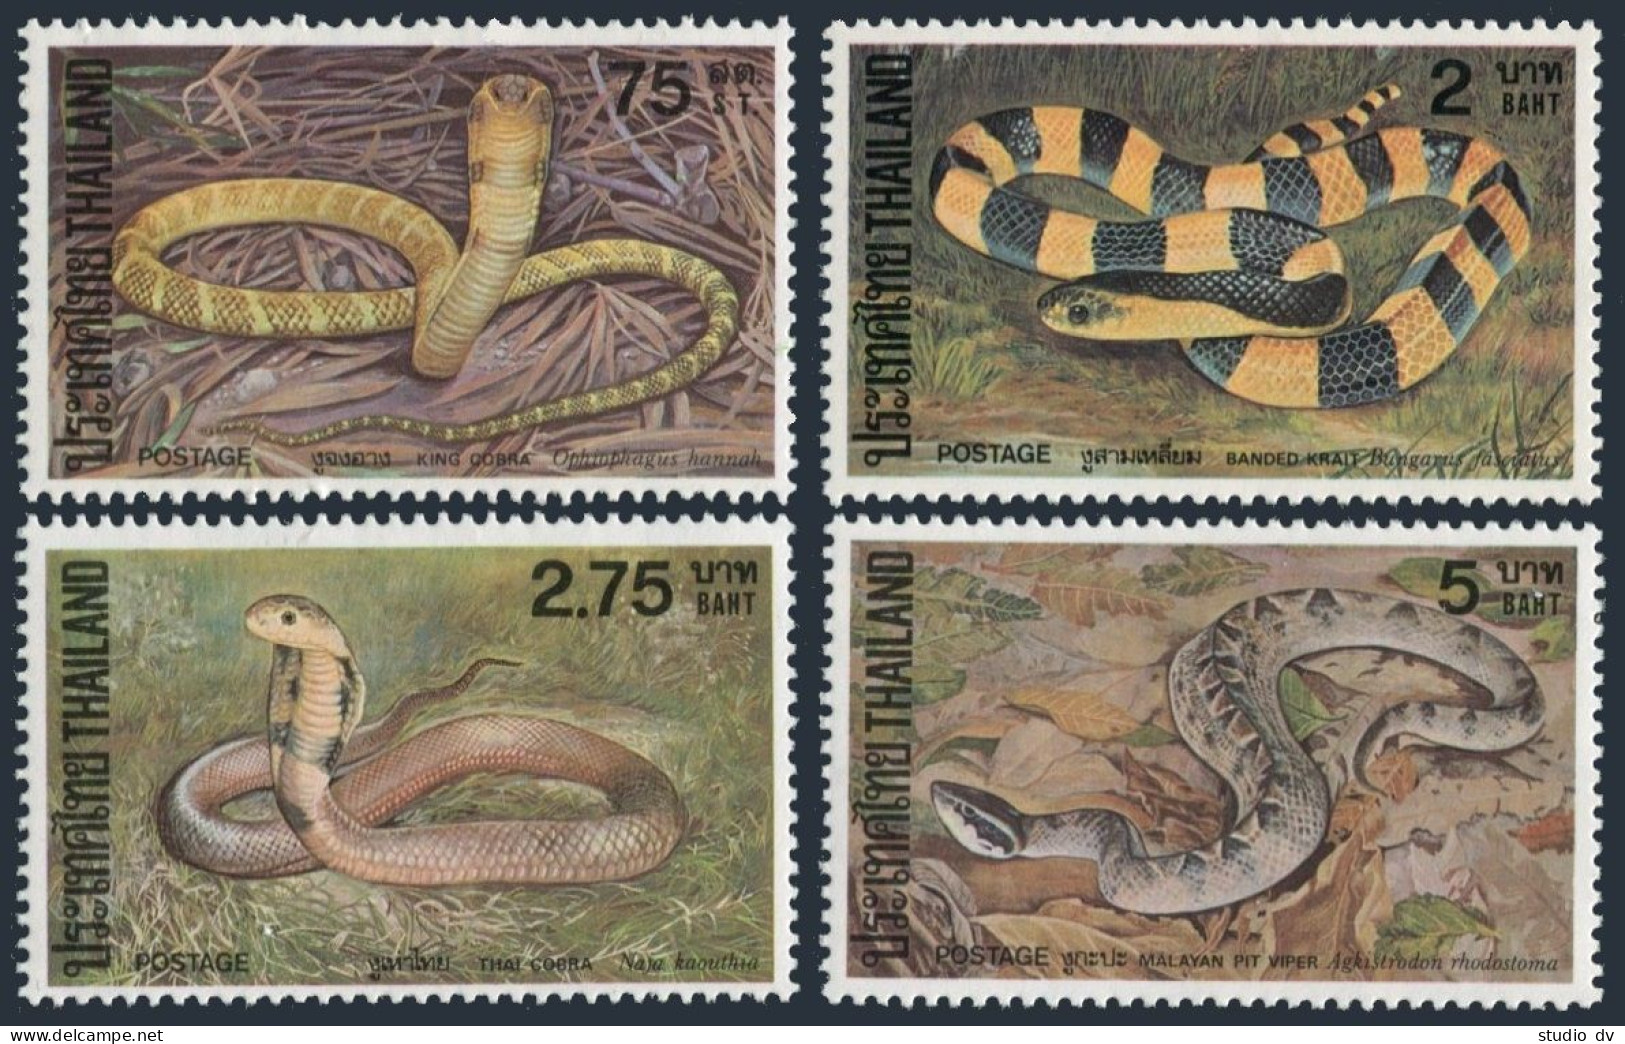 Thailand 977-980,MNH.Michel 989-992. King Cobra,Krait,Thai Cobra,Viper.1981. - Tailandia